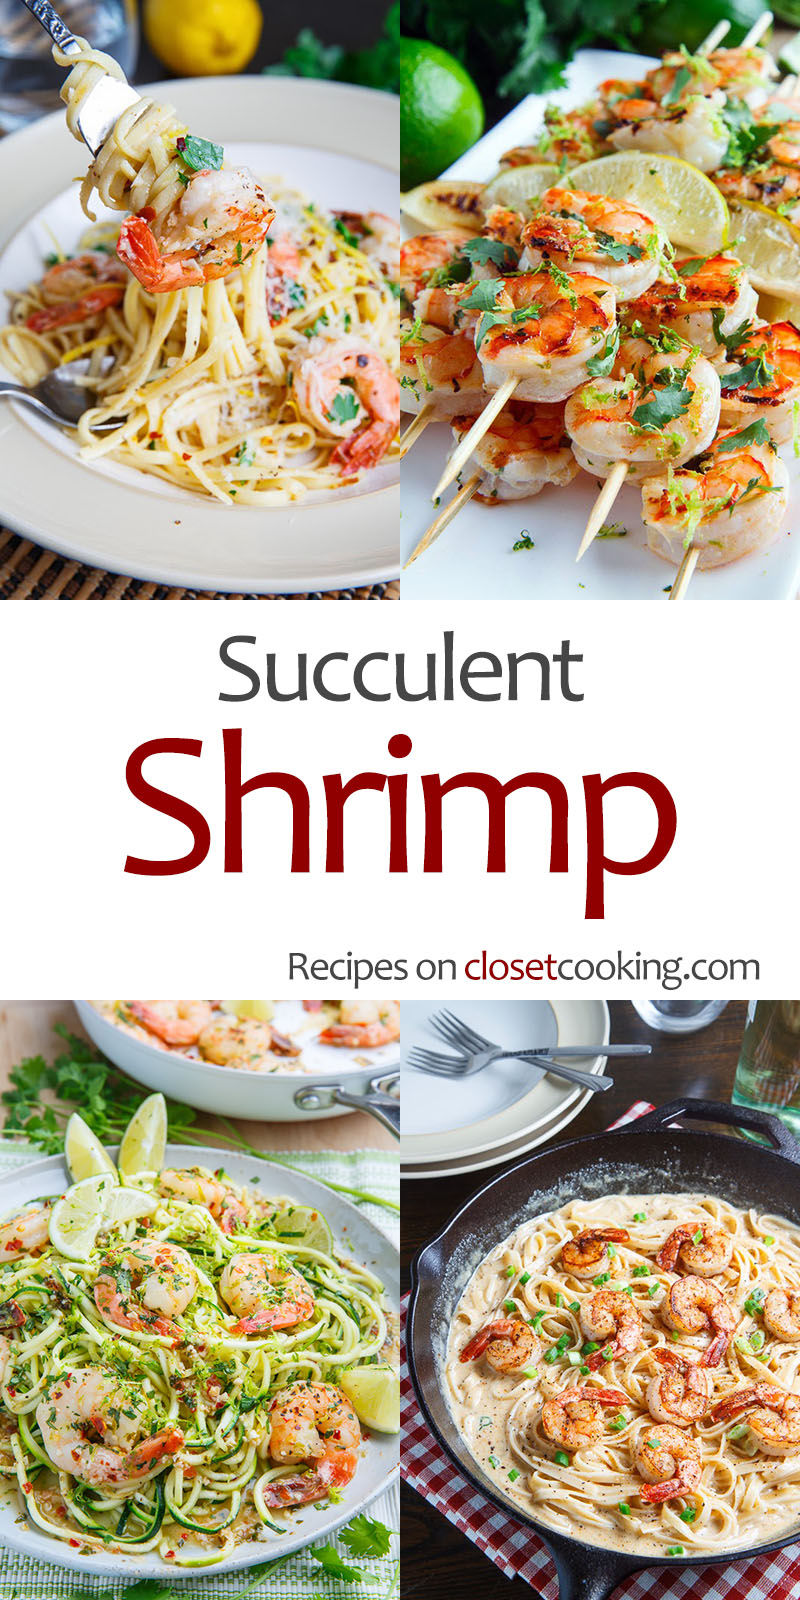 Succulent Shrimp Recipes